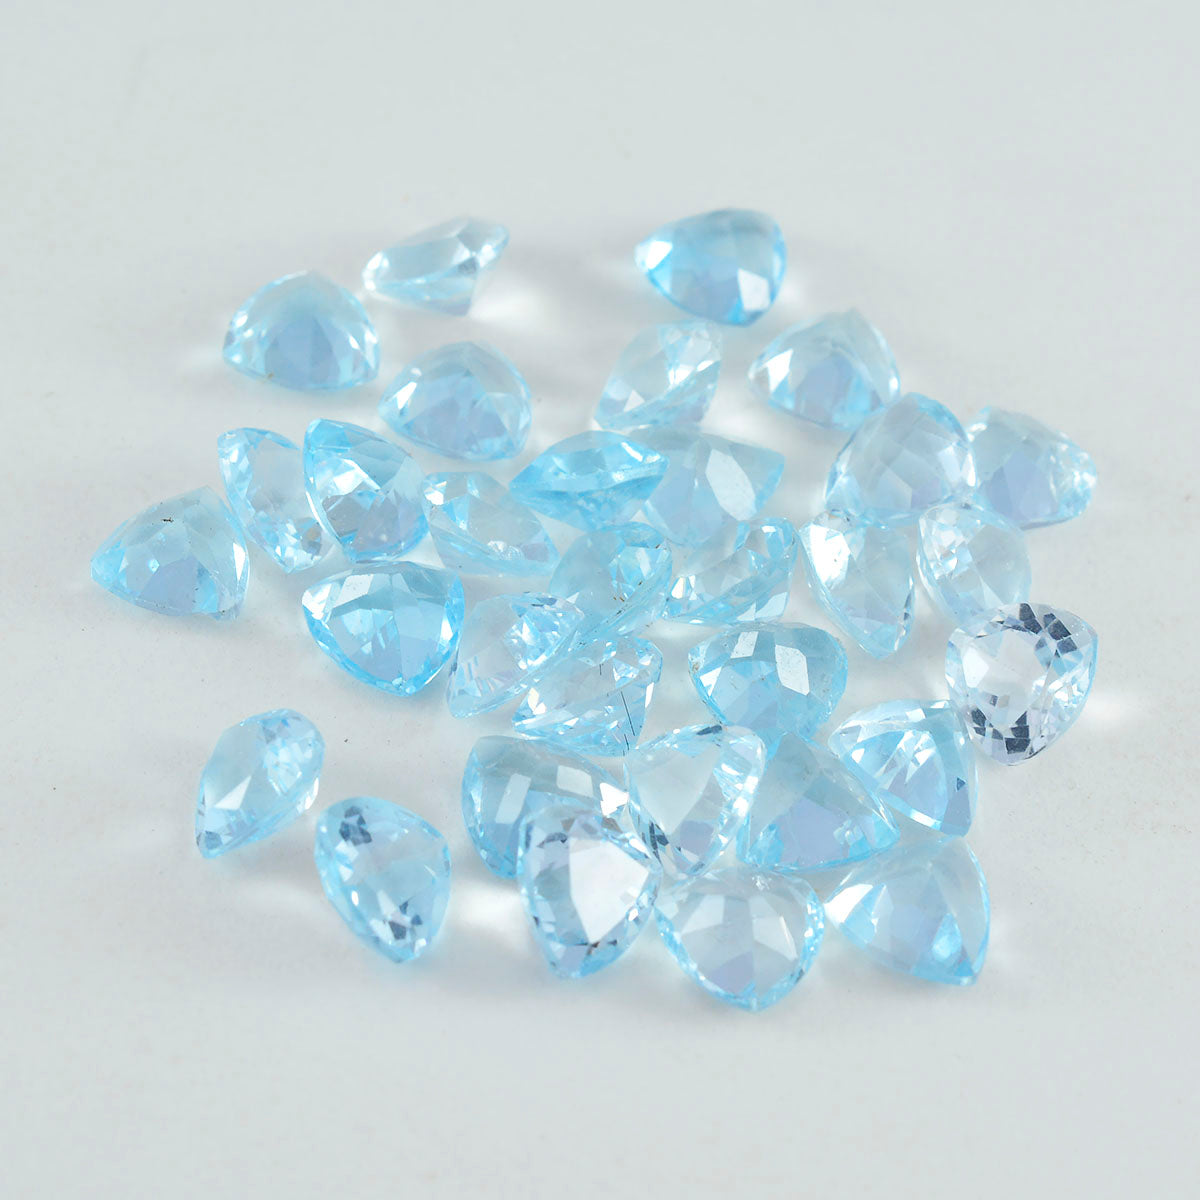 riyogems 1 шт. настоящий синий топаз ограненный 5x5 мм форма триллиона драгоценный камень удивительного качества